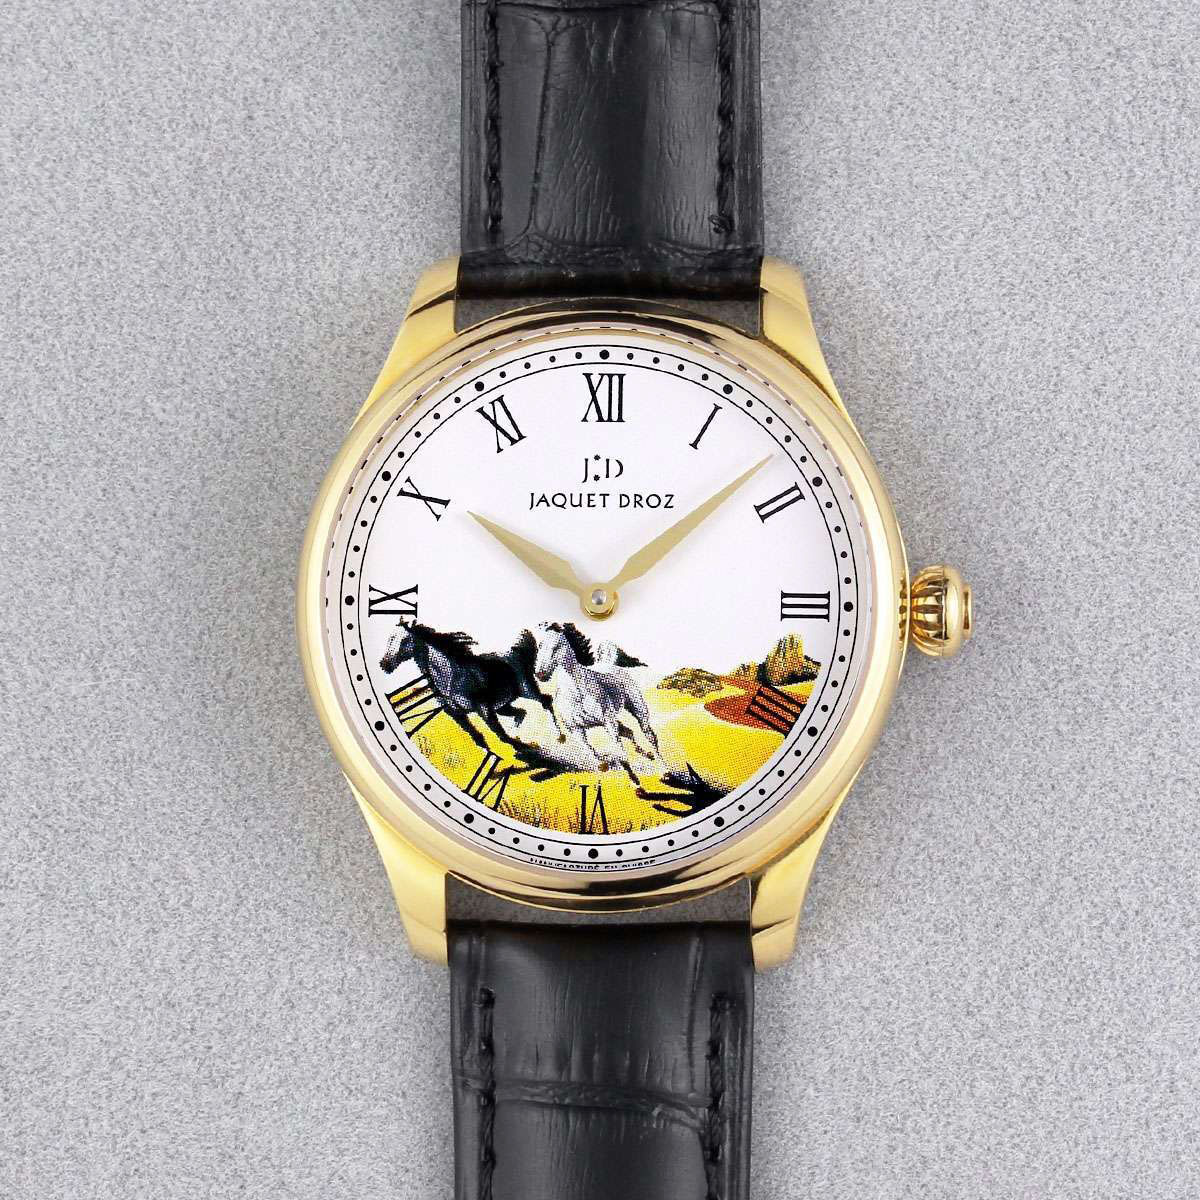 雅克羅德 Jaquet-Droz 藝術工坊系列腕錶 搭載進口9015機芯